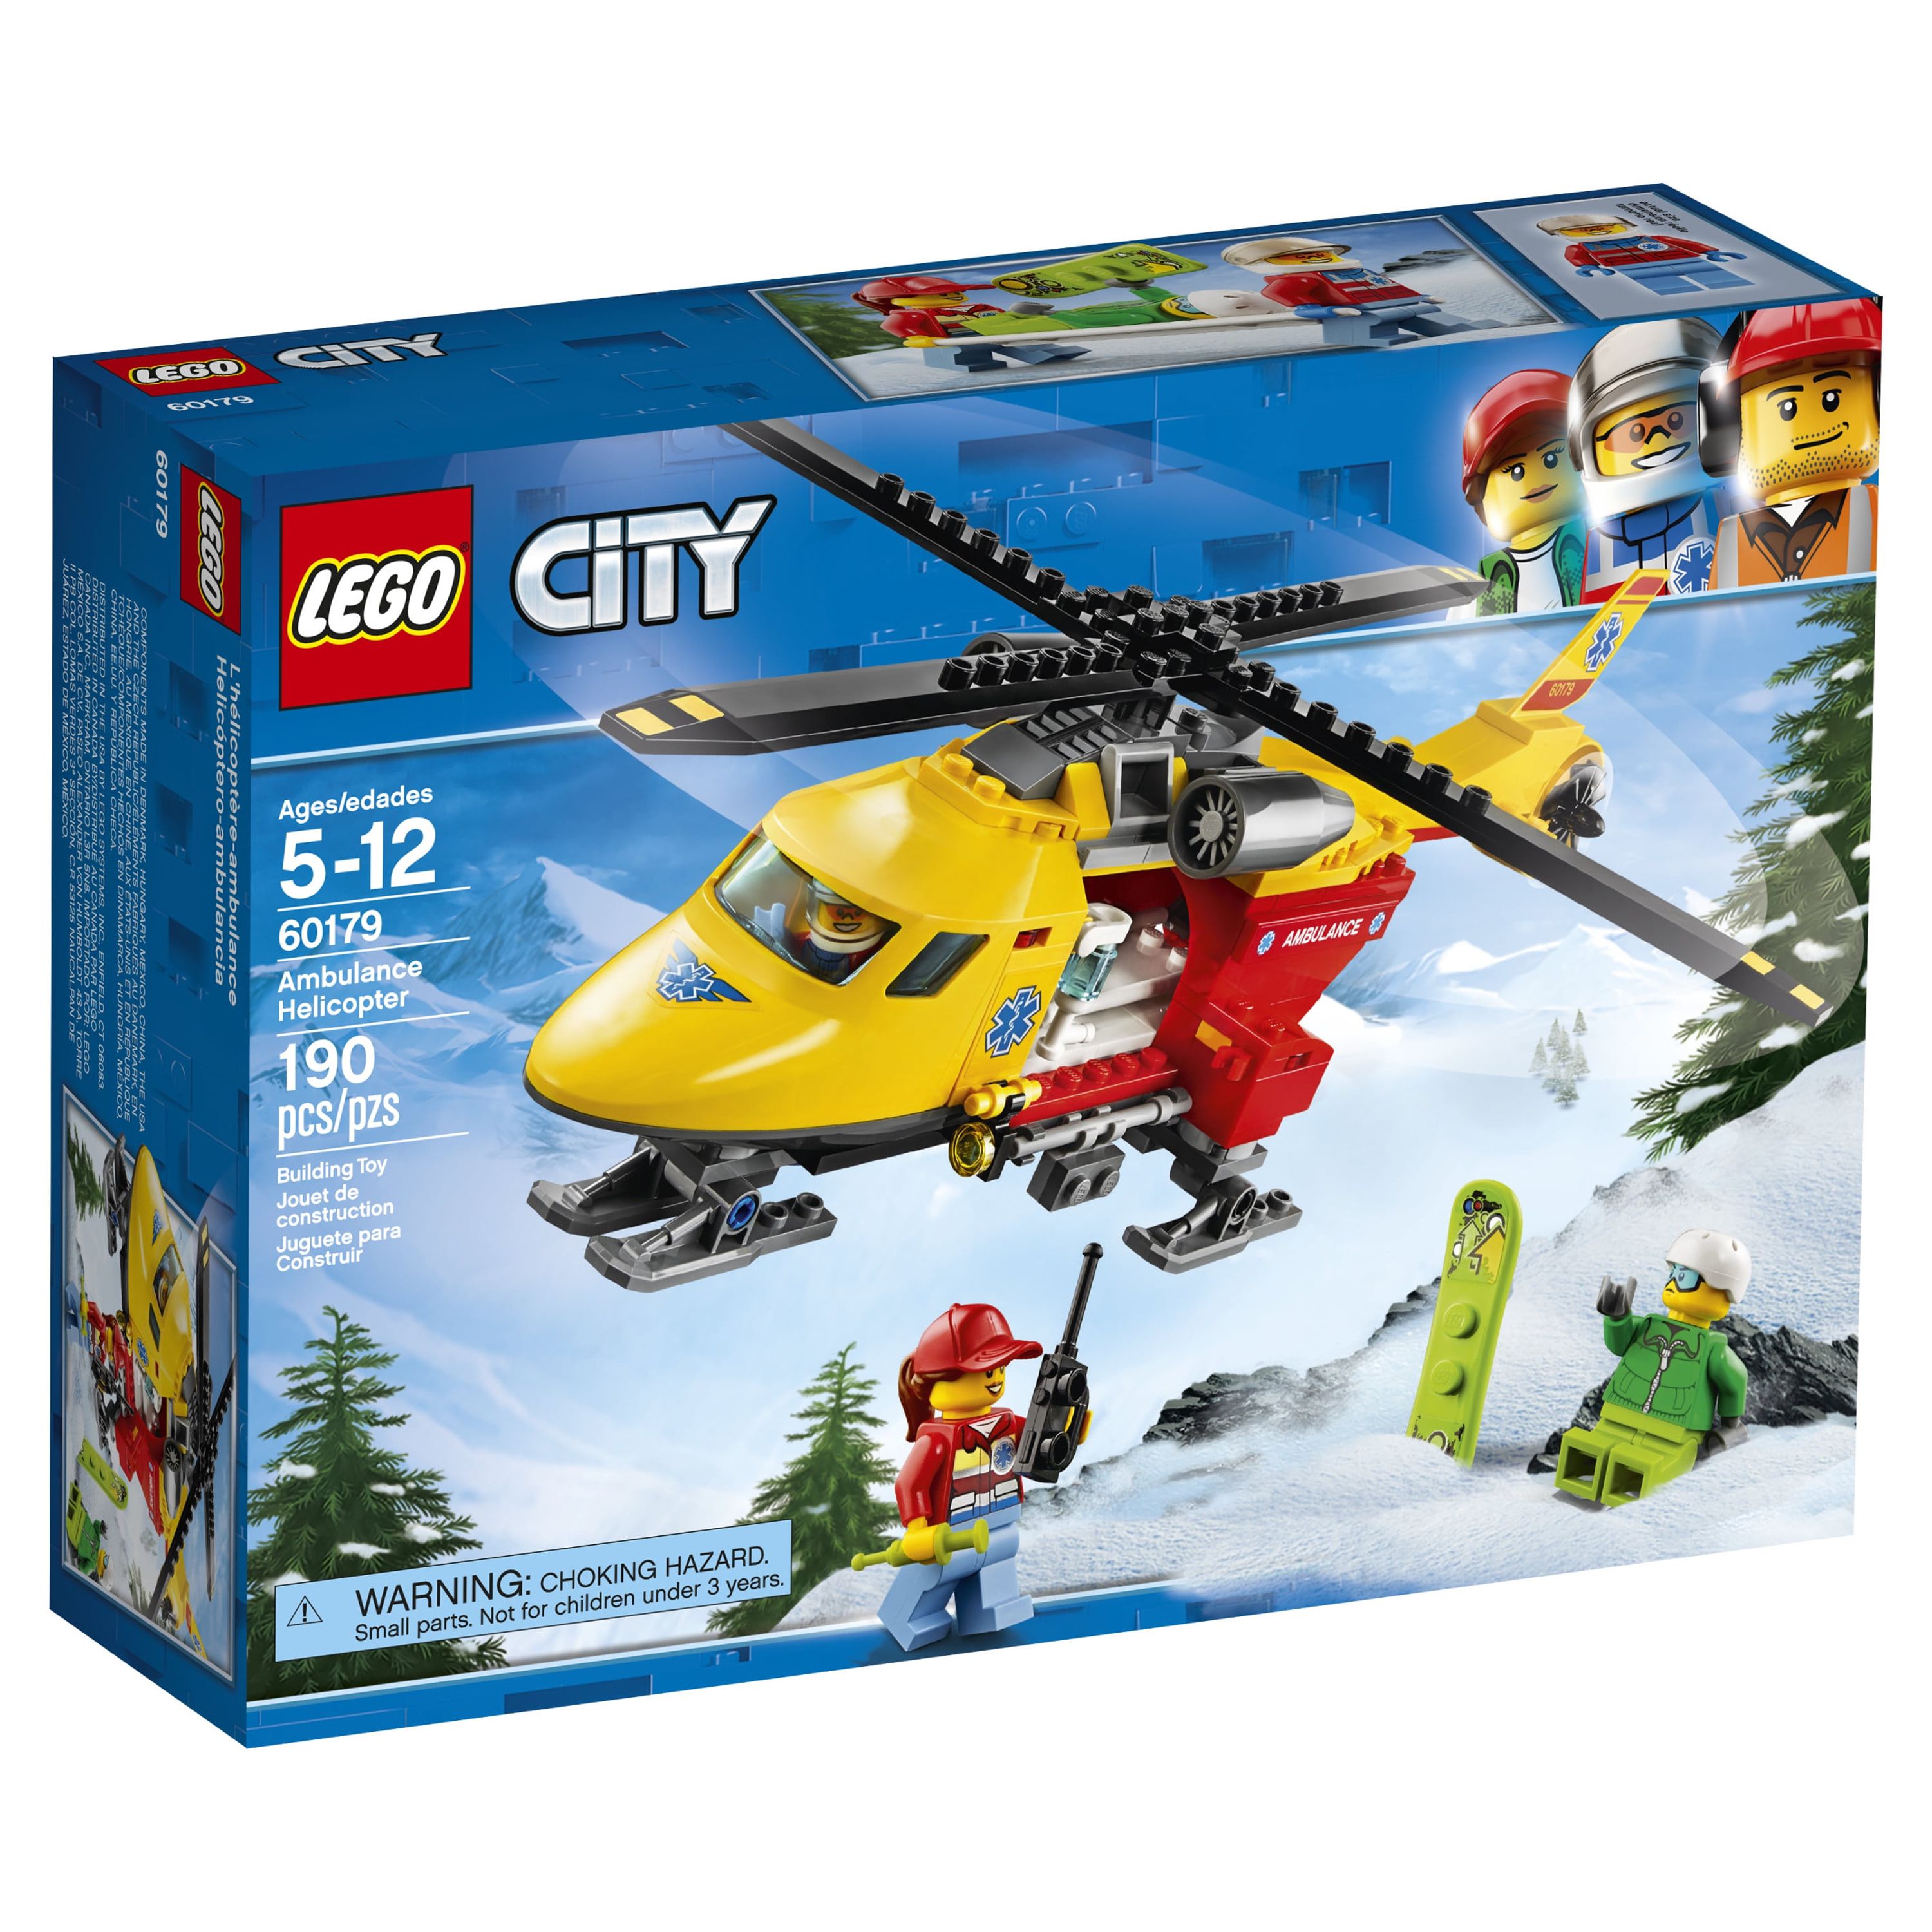 LEGO City Great Vehicles Ambulance Helicopter 60179 - image 4 of 5